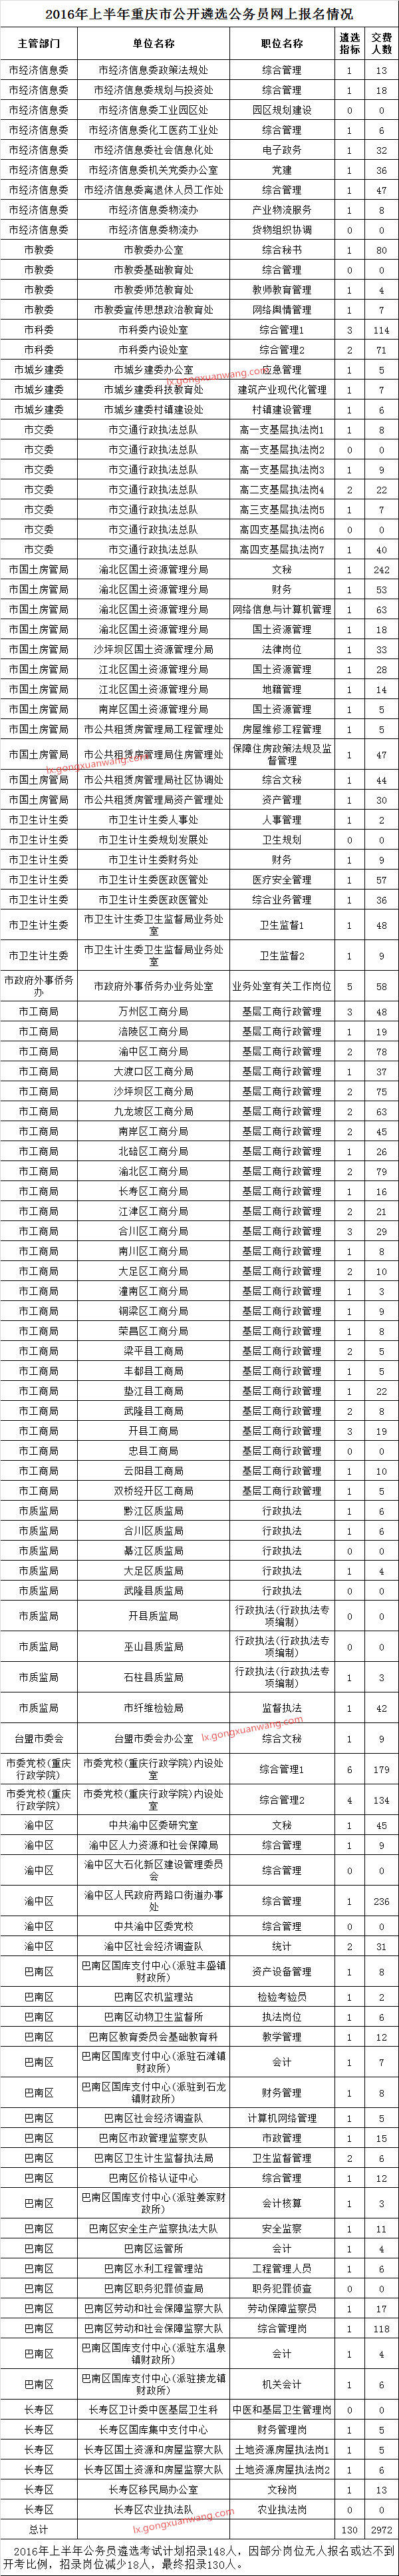 2016年上半年重庆市公开遴选公务员网上报名情况.png